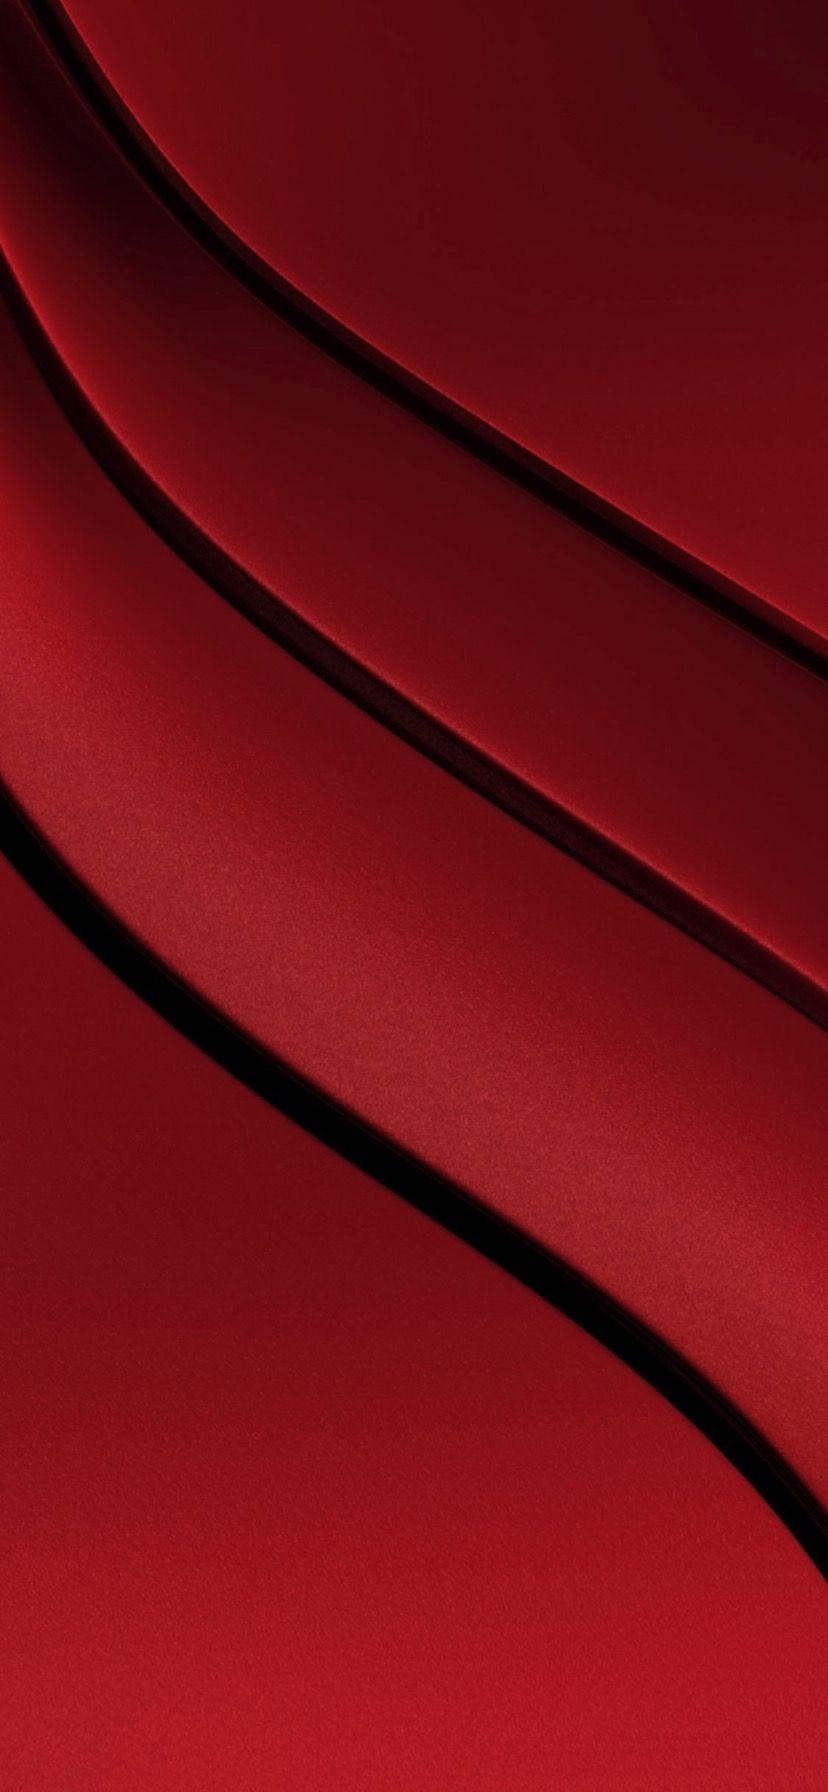 iPhone XR Red Wallpapers - Top Những Hình Ảnh Đẹp